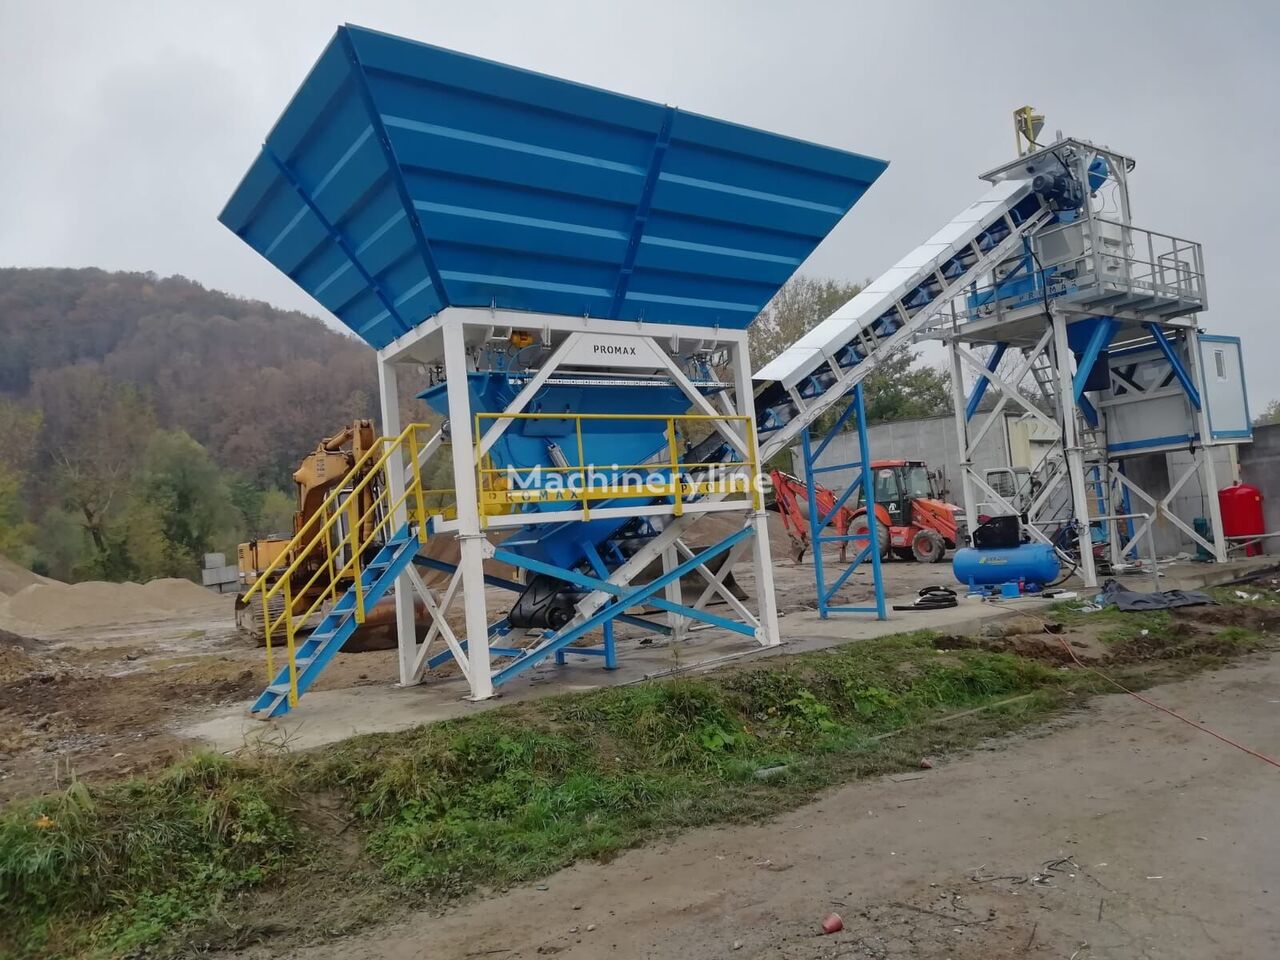 Promax Compact Concrete Batching Plant C60-SNG-PLUS (60m3/h) planta de hormigón